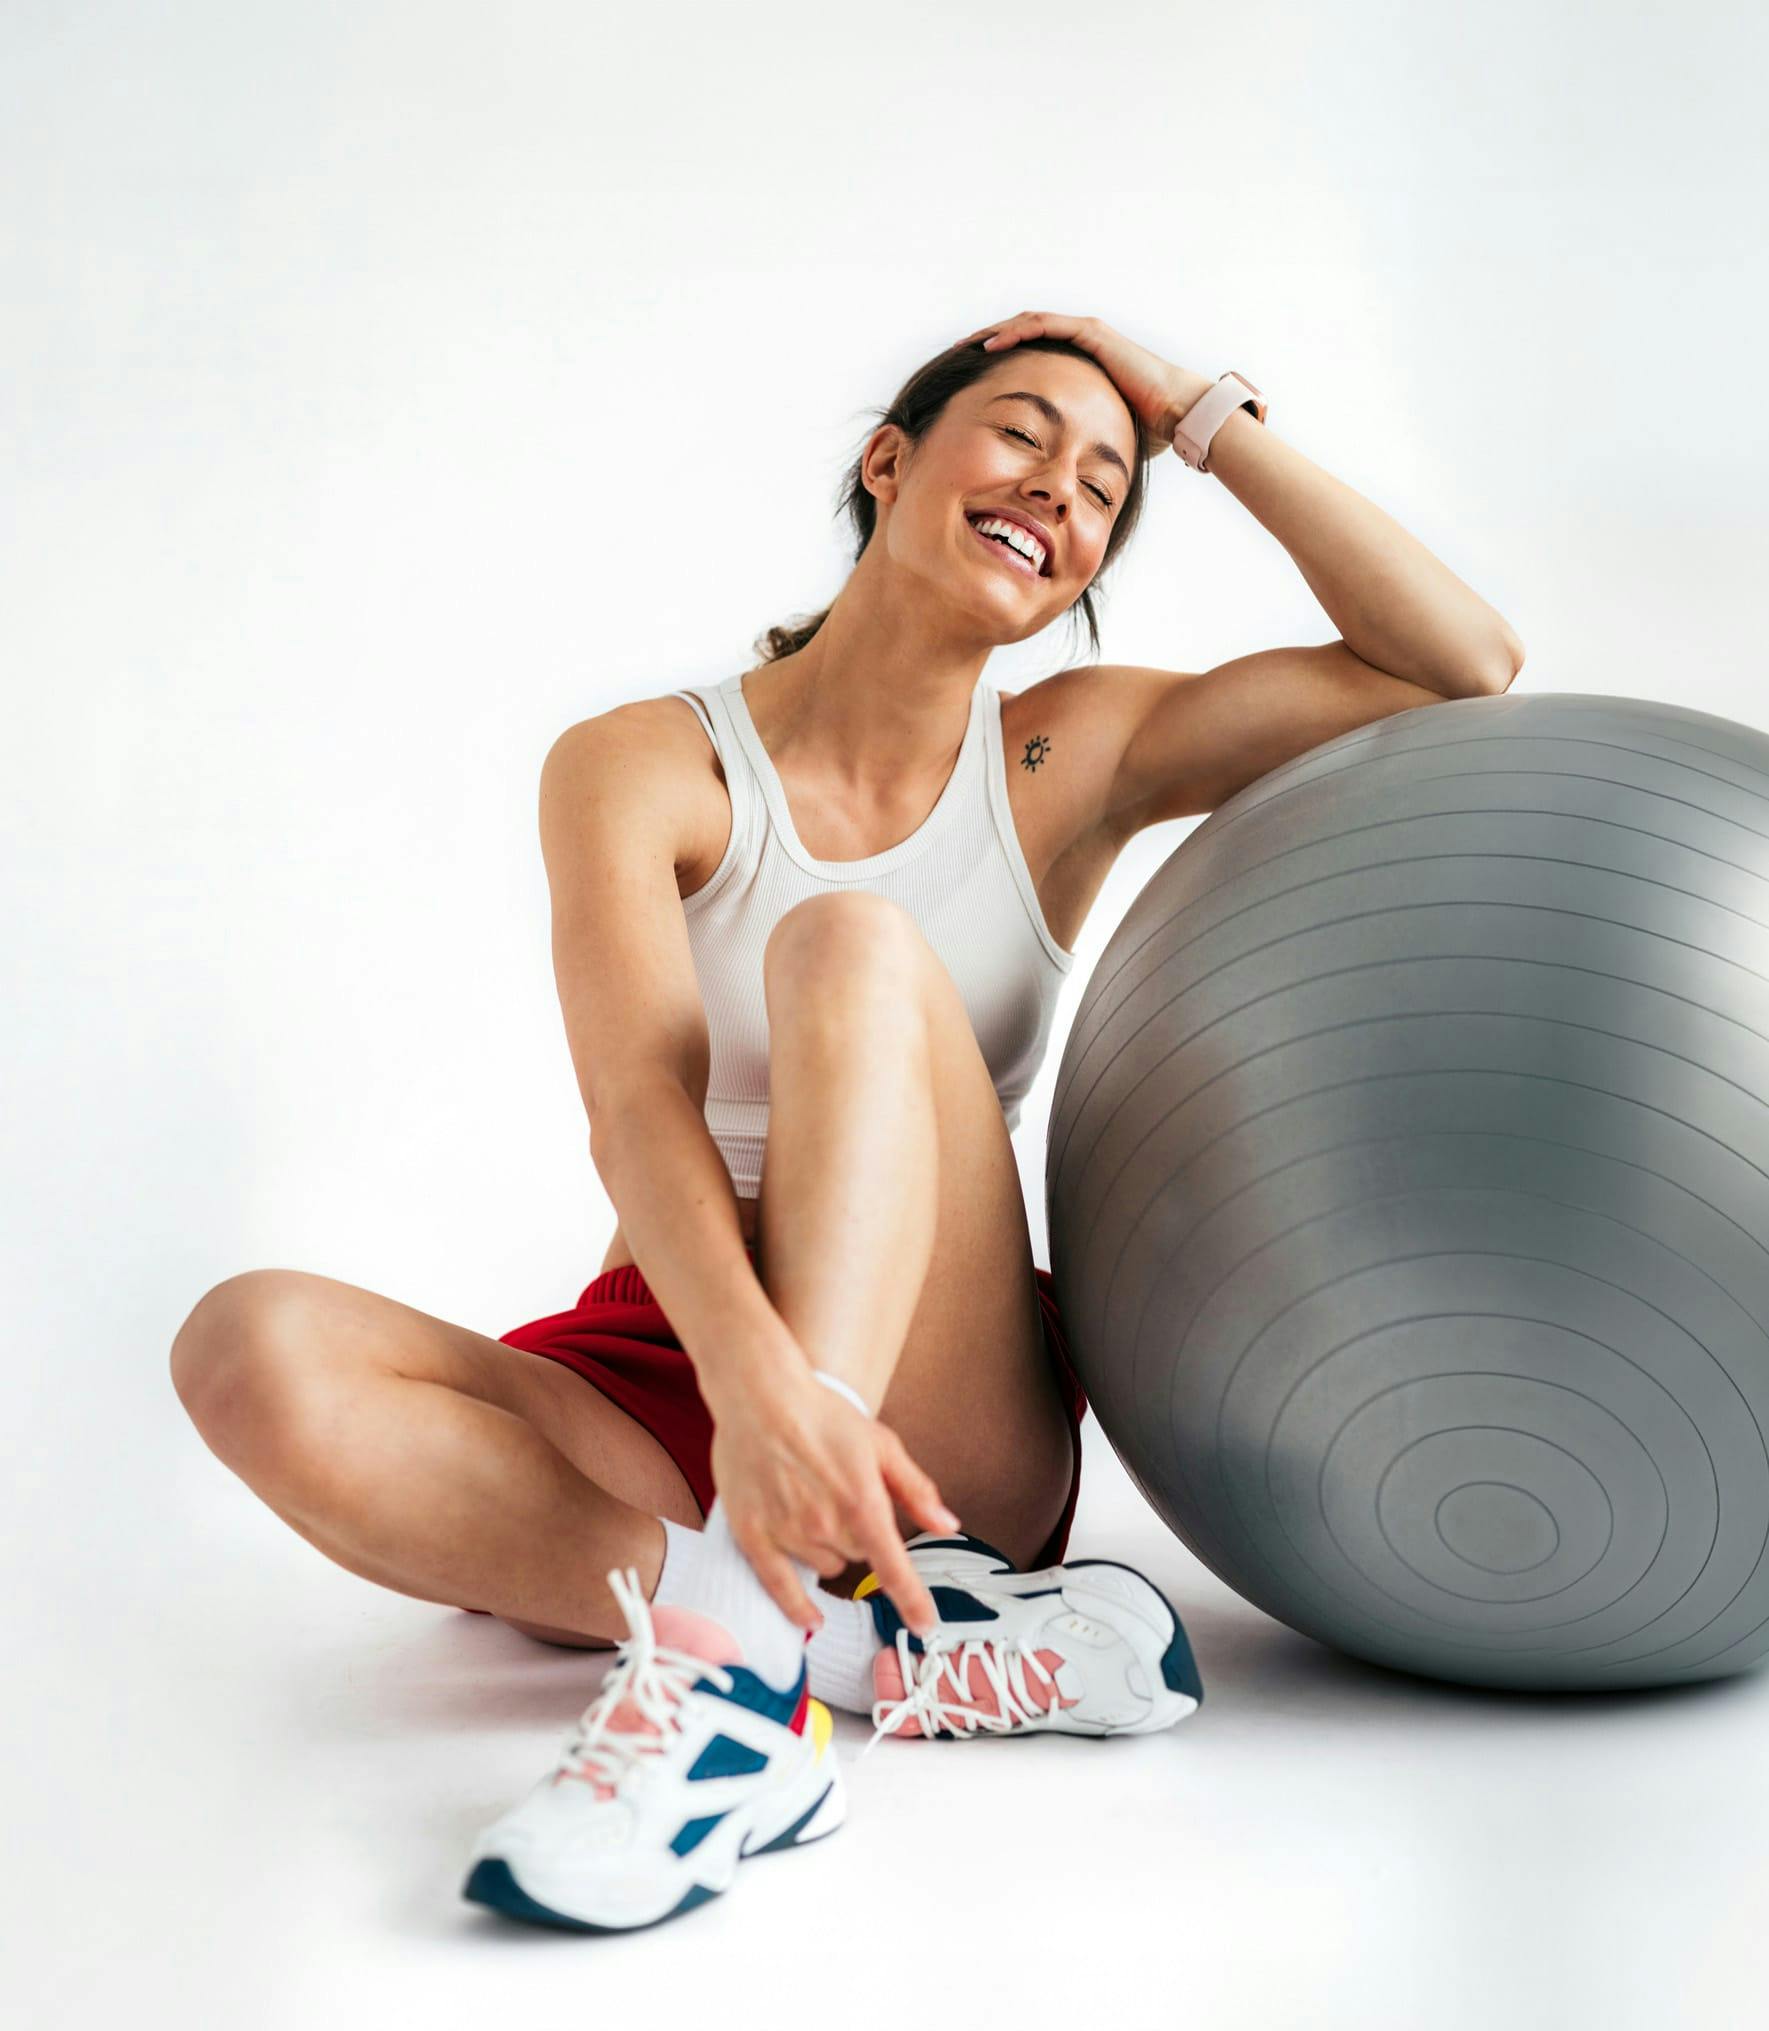 Una mujer con ropa deportiva sentada y sonriendo apoyada en una pelota de entrenamiento